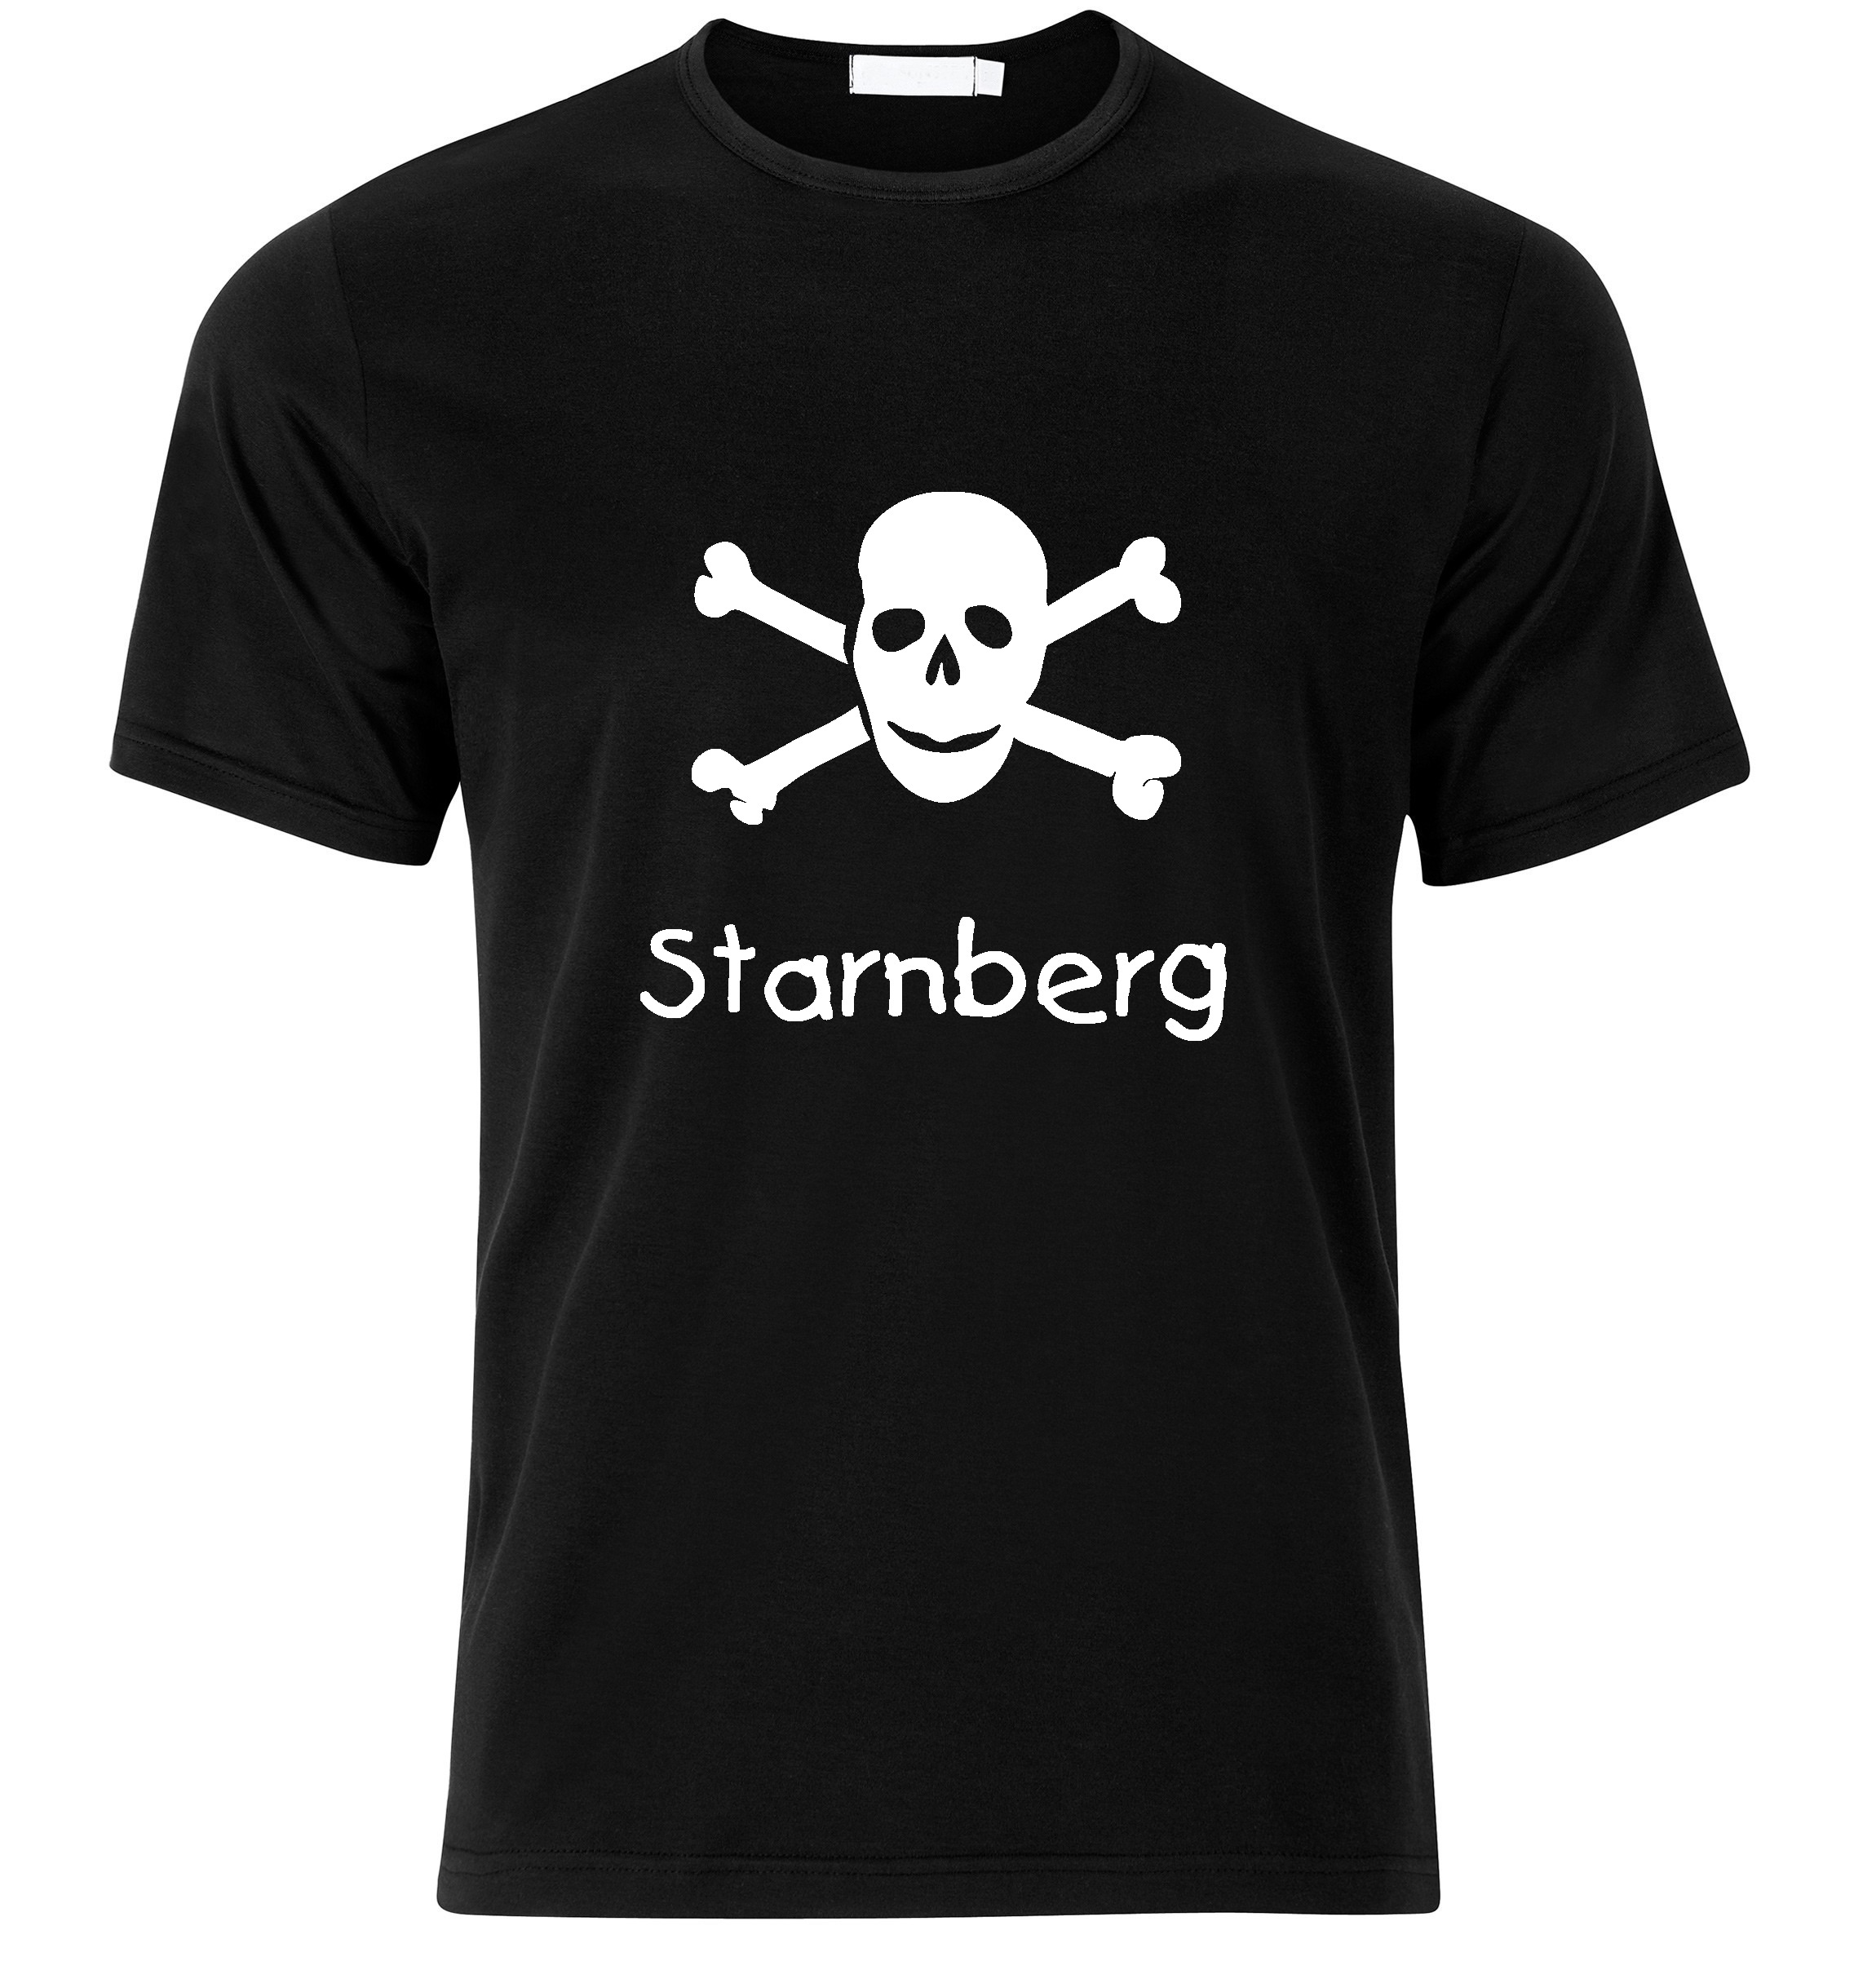 T-Shirt Starnberg Jolly Roger, Totenkopf